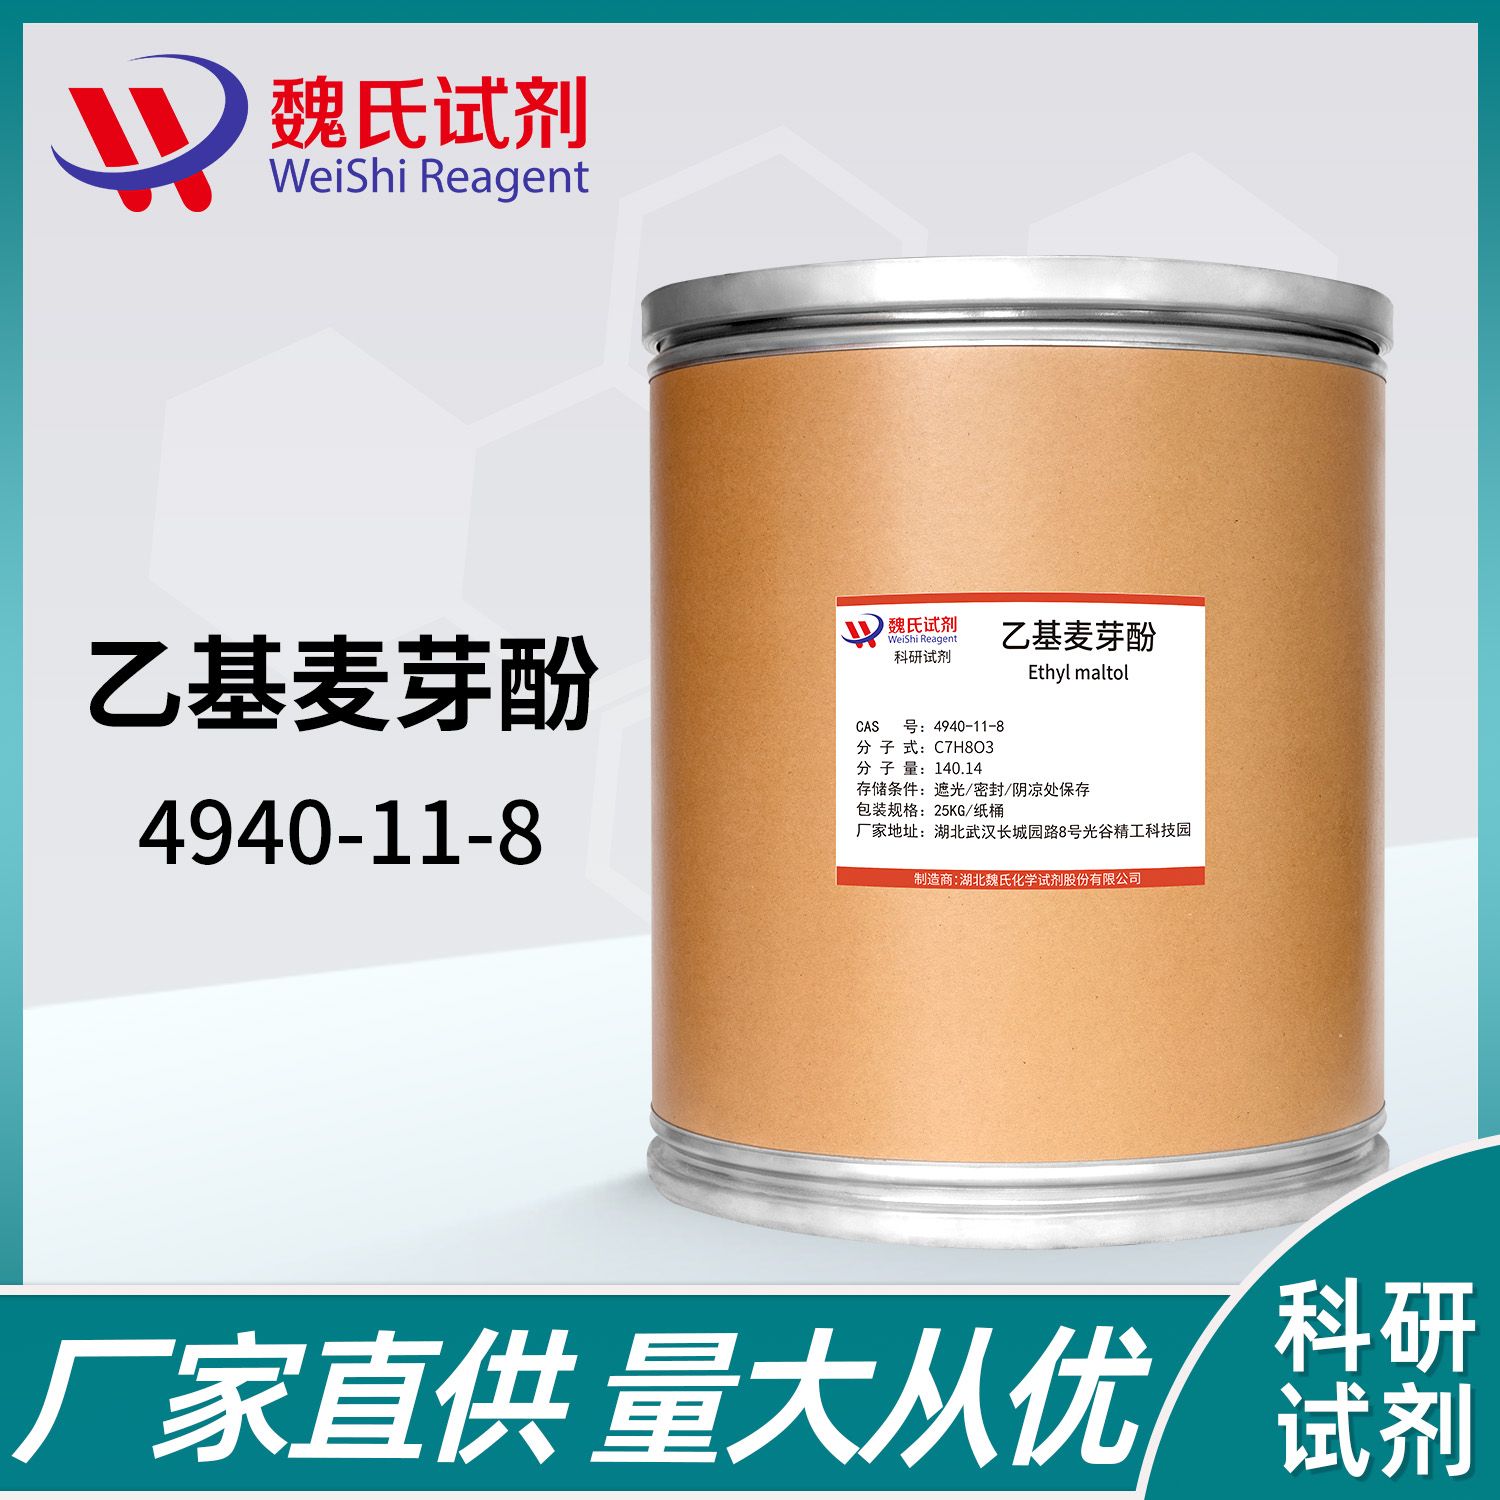 乙基麦芽酚—4940-11-8—Ethylmaltol